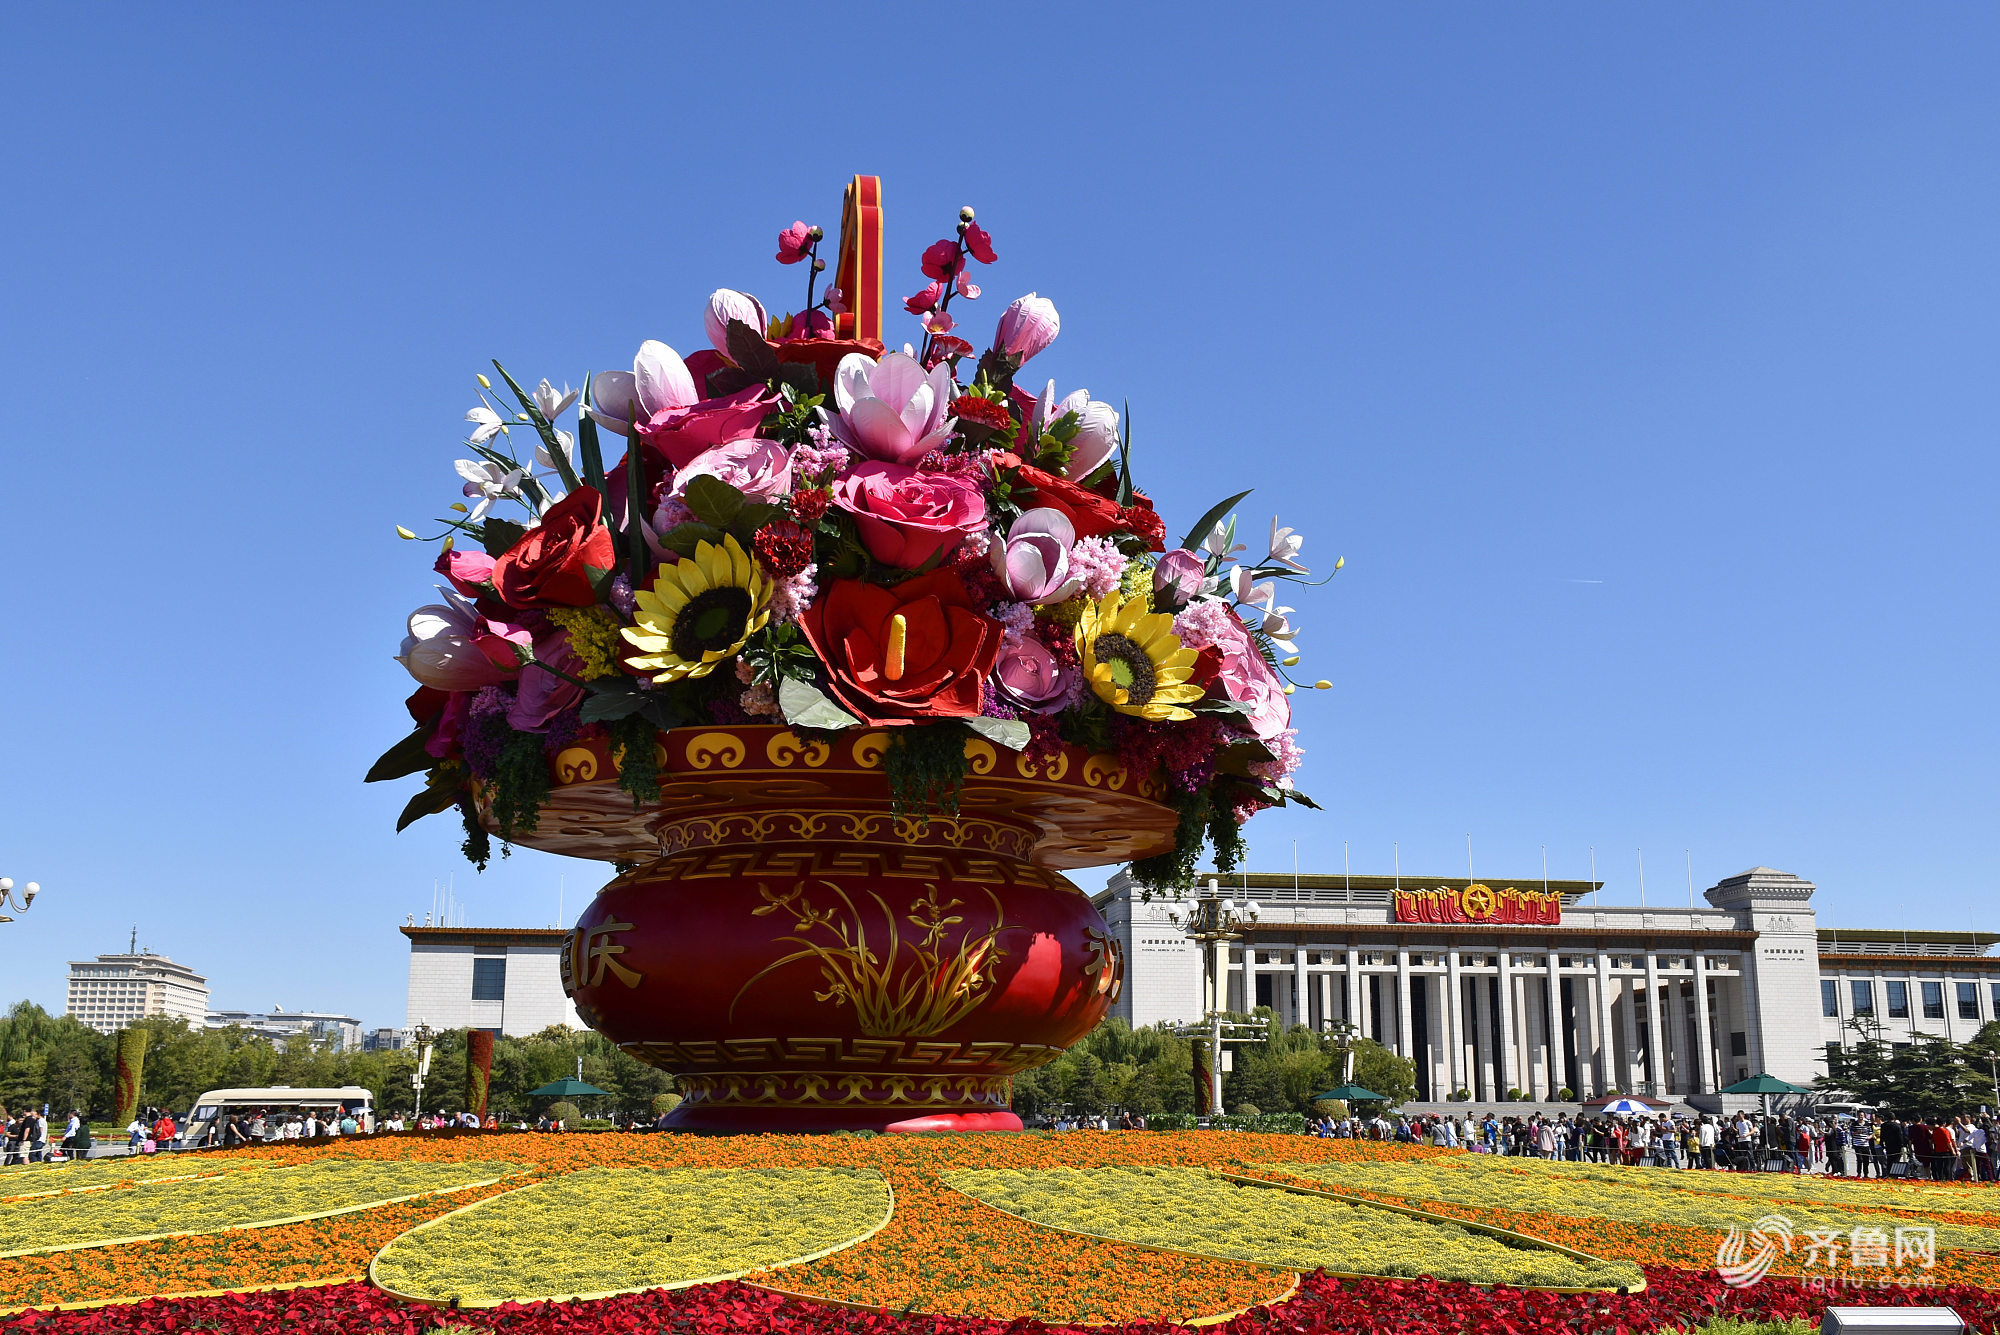 天安门广场“祝福祖国”巨型花篮喜迎“双节”